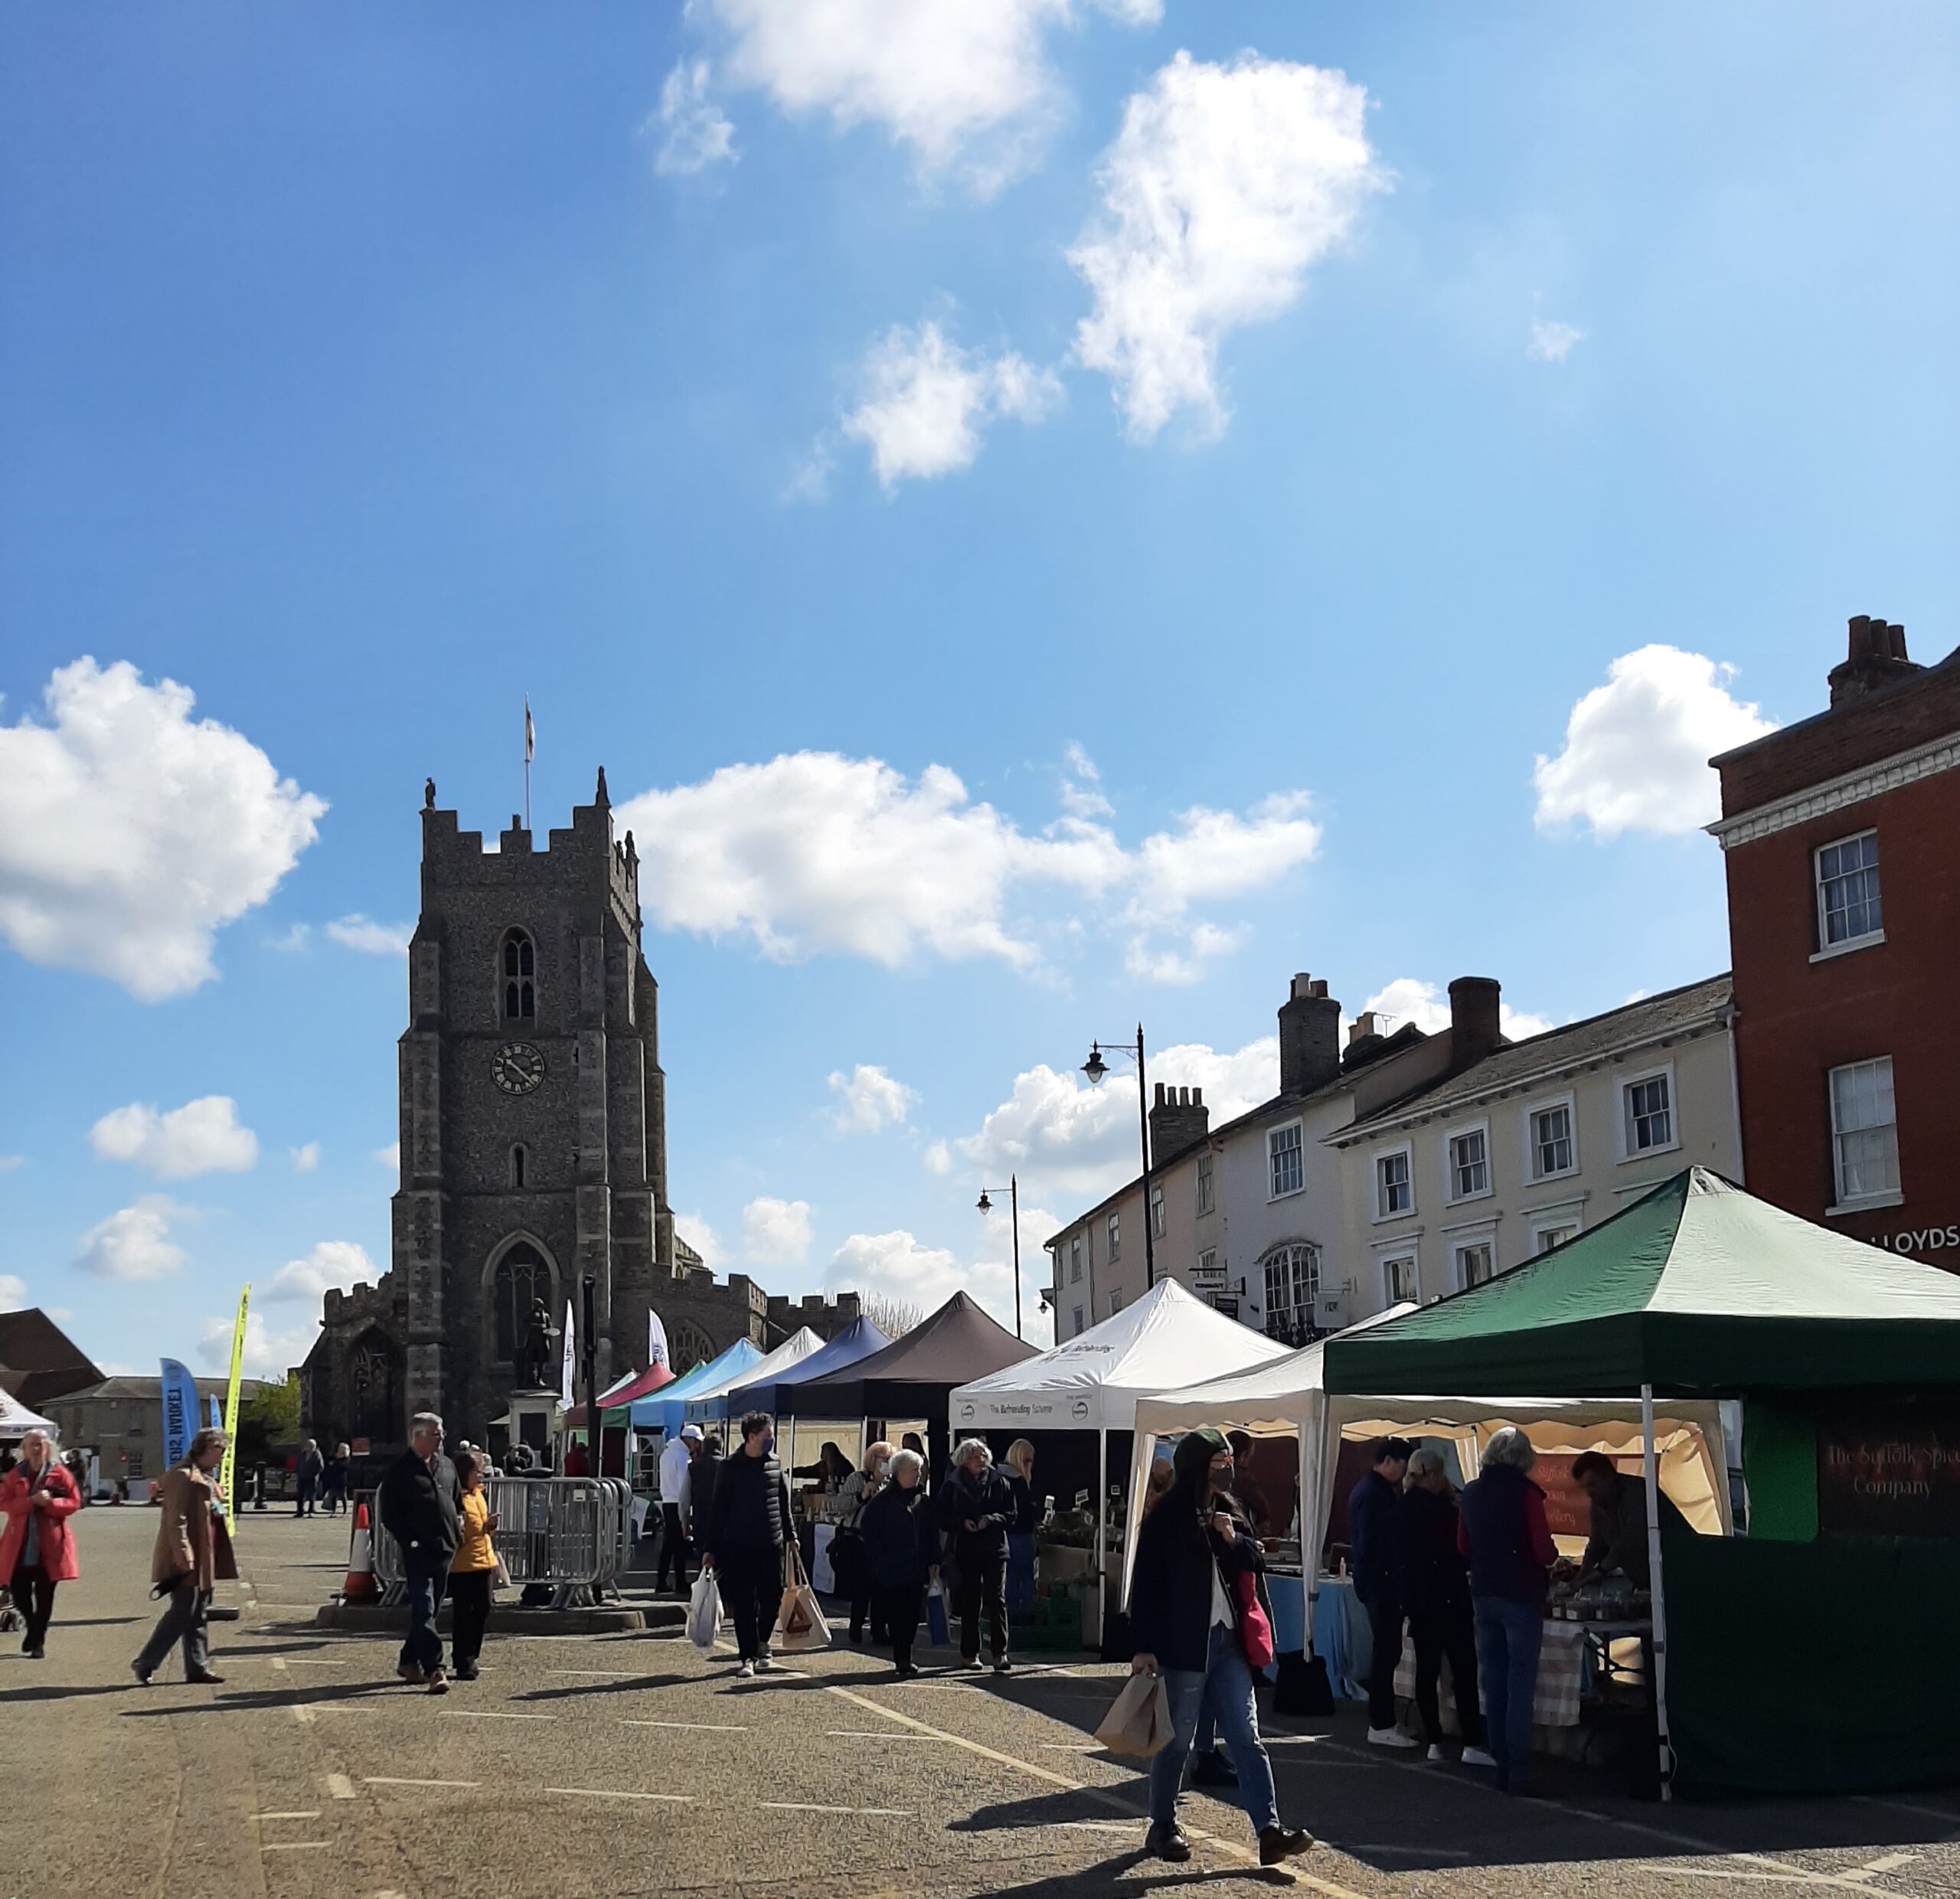 Suffolk Market Events